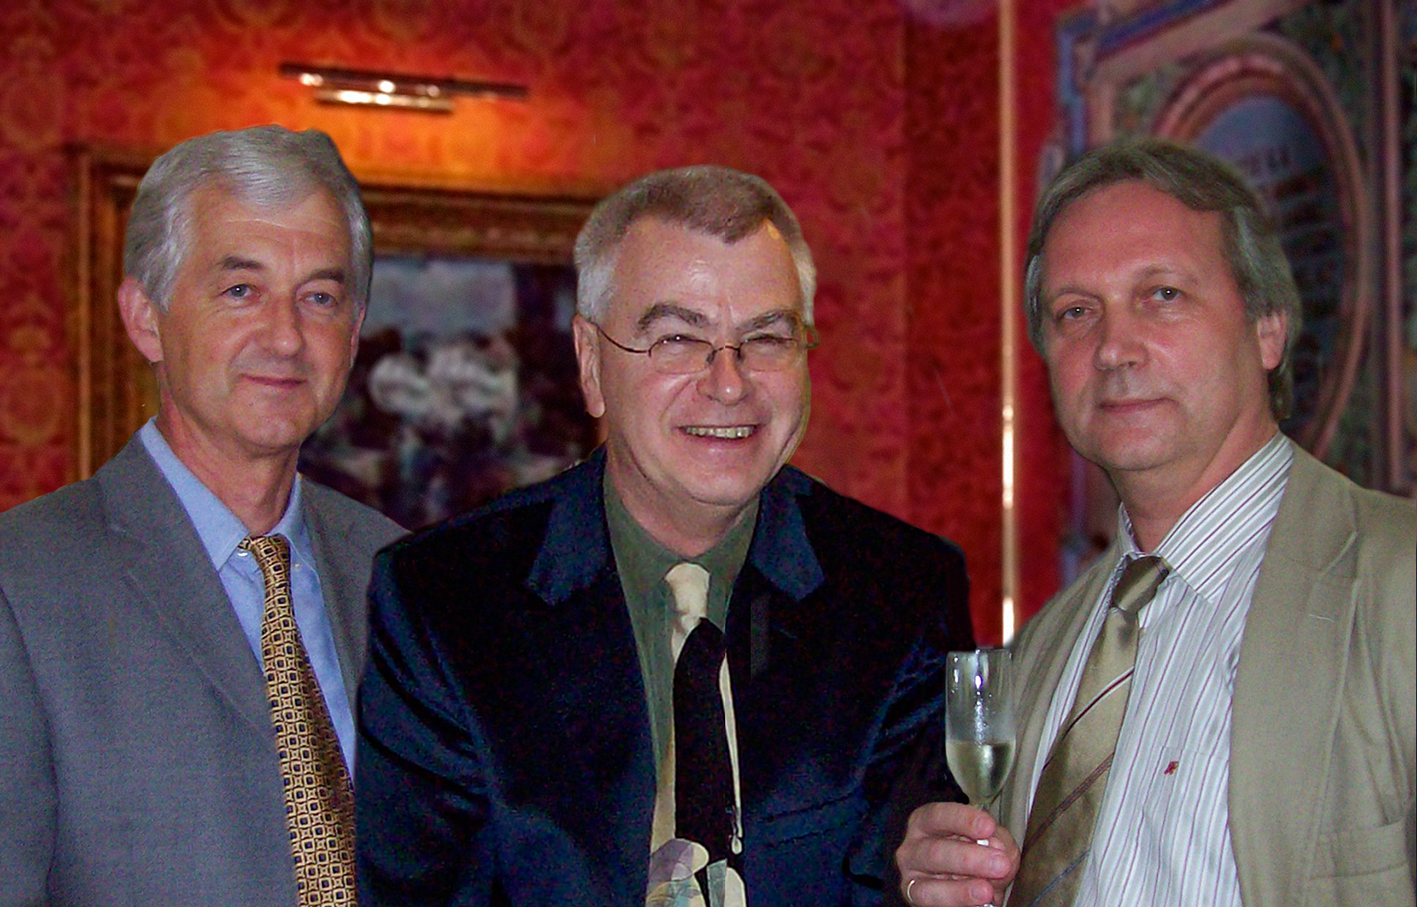 Somogyi Péter, Buzsáki György és Freund Tamás (balról jobbra) neurobiológusok a Magyar Tudományos Akadémián 2010-ben. Egy évvel később ők nyerték az elsőként 2011-ben kiosztott Agy-díjat.